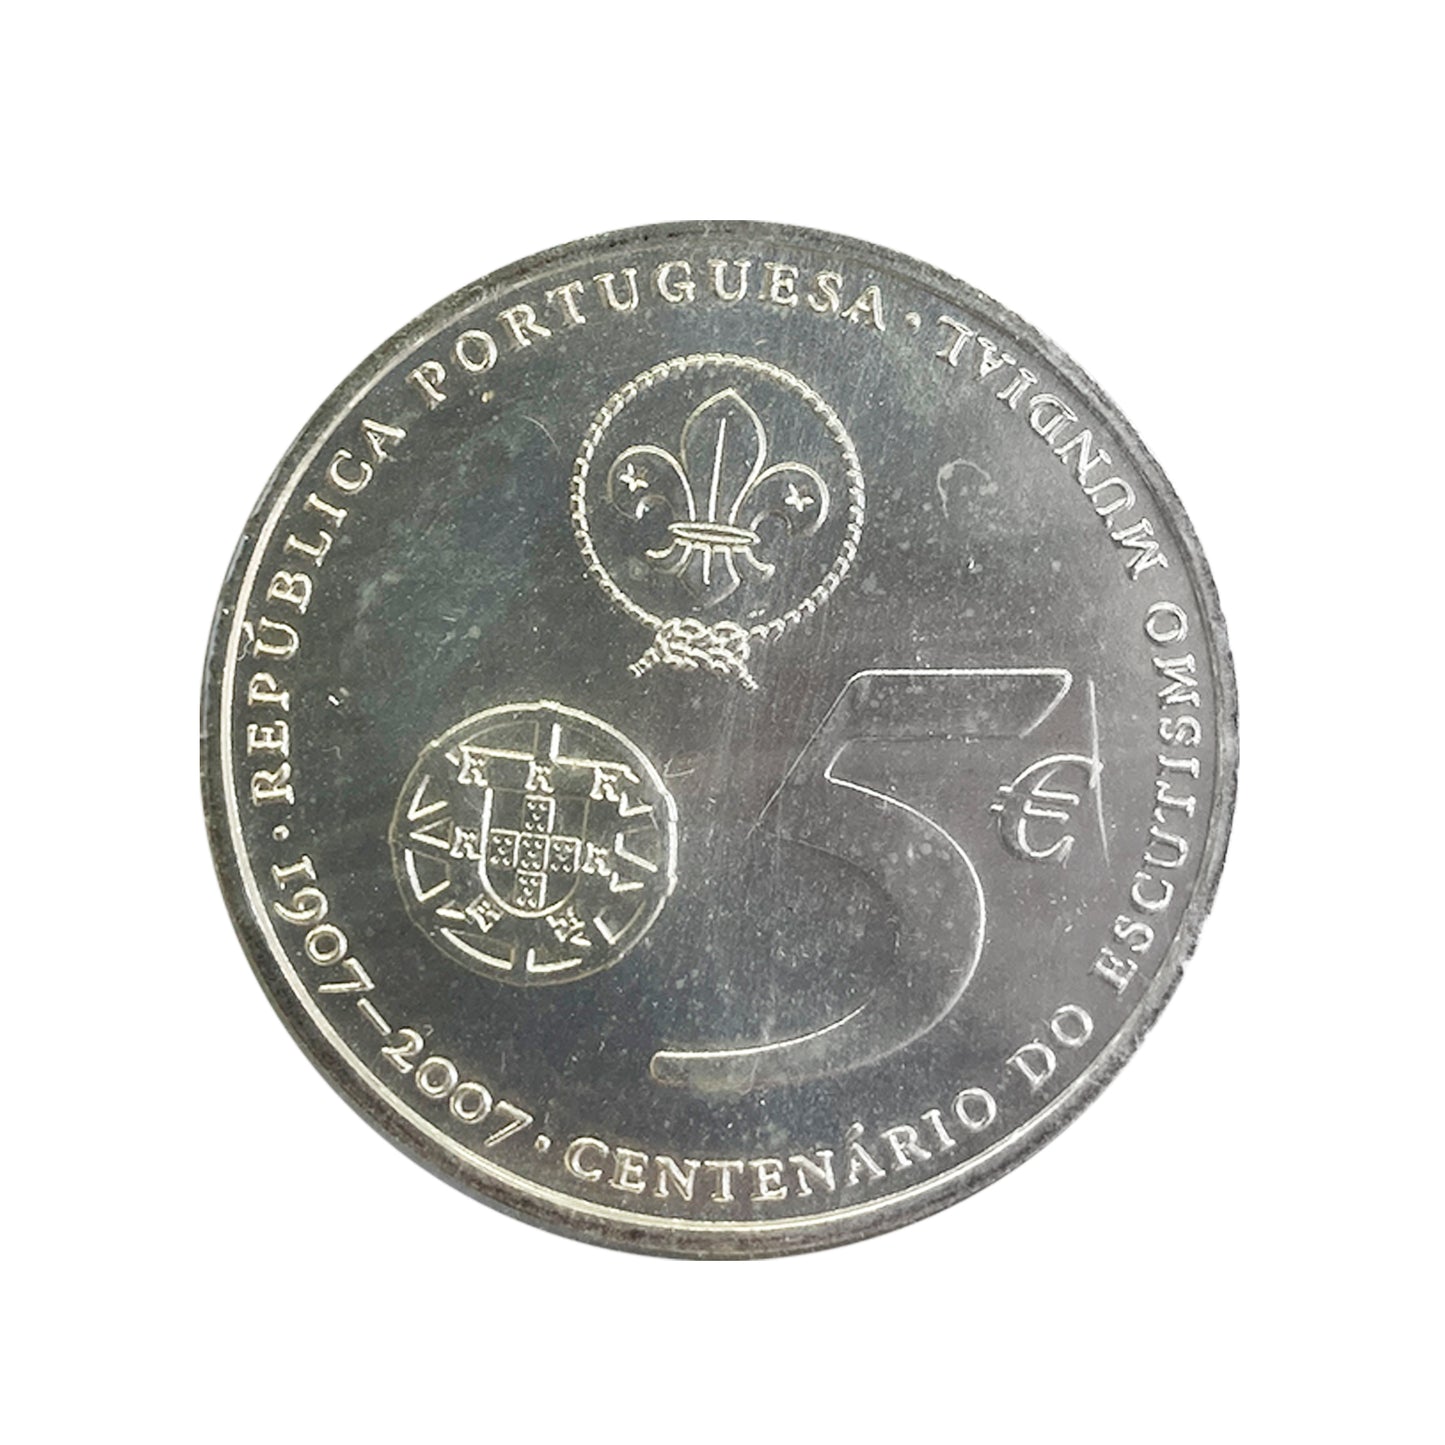 Portugal - Moneda 5 euros en plata 2007 - Centenario del Movimiento Scout